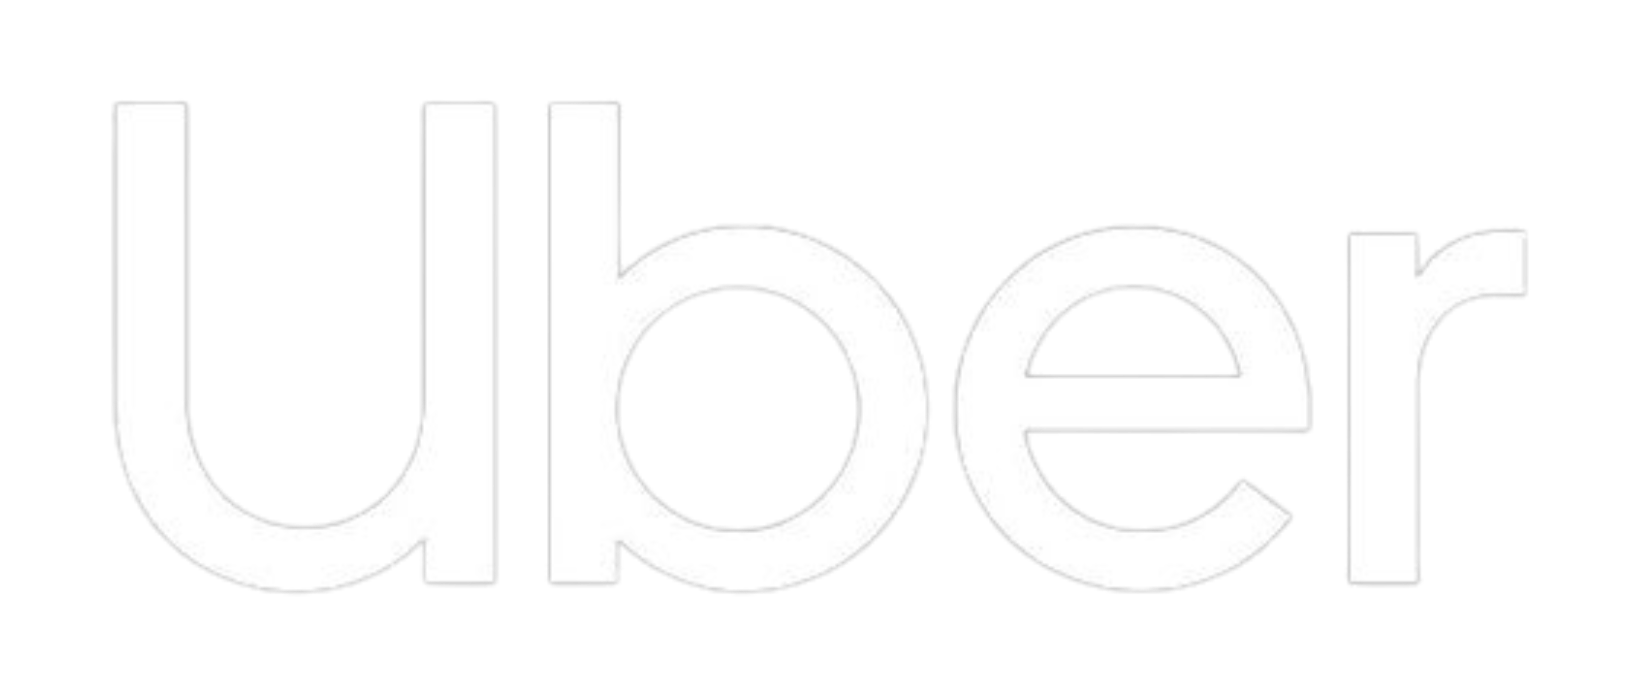 ubder logo